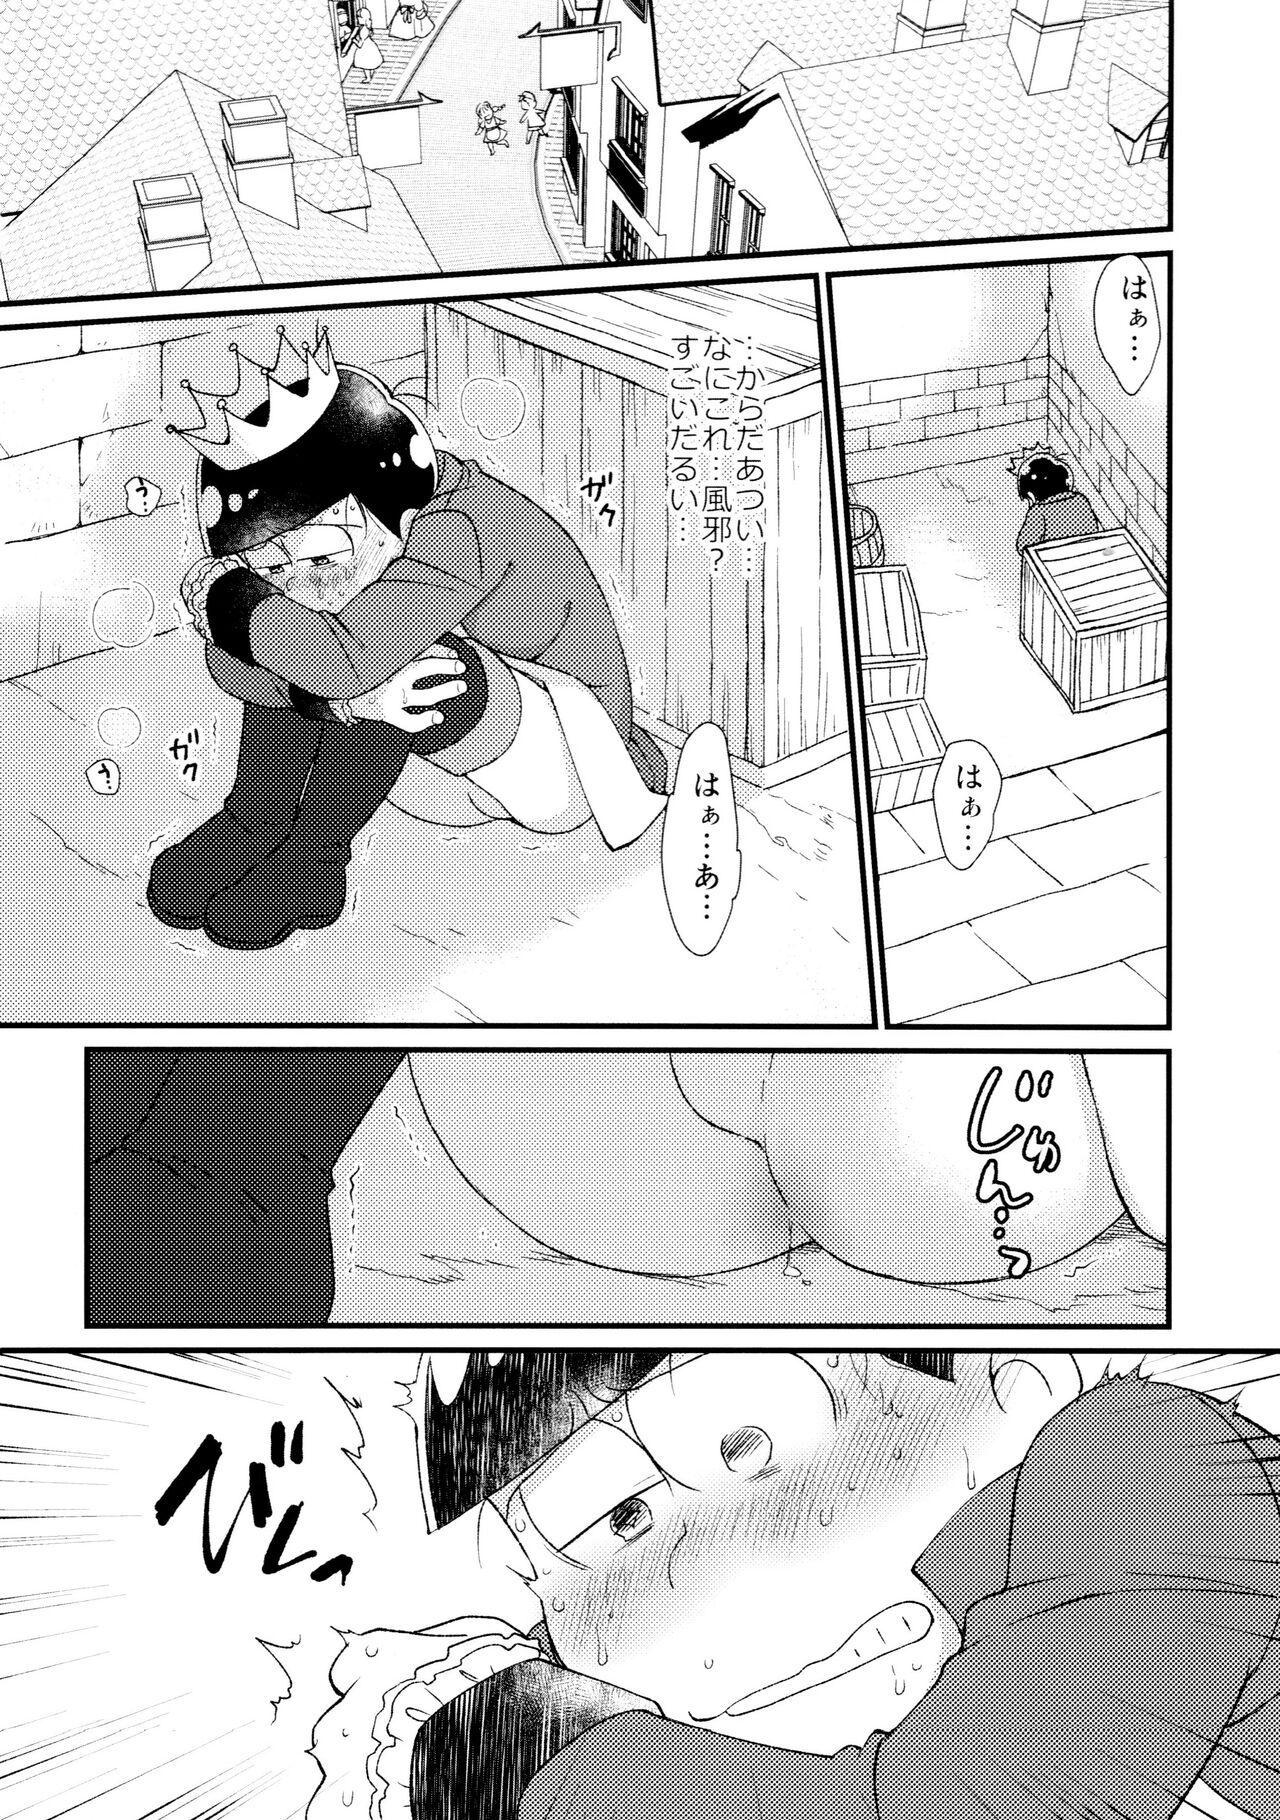 Amateur Sex Anata wa watashinounmei no hito - Osomatsu san Sesso - Page 3